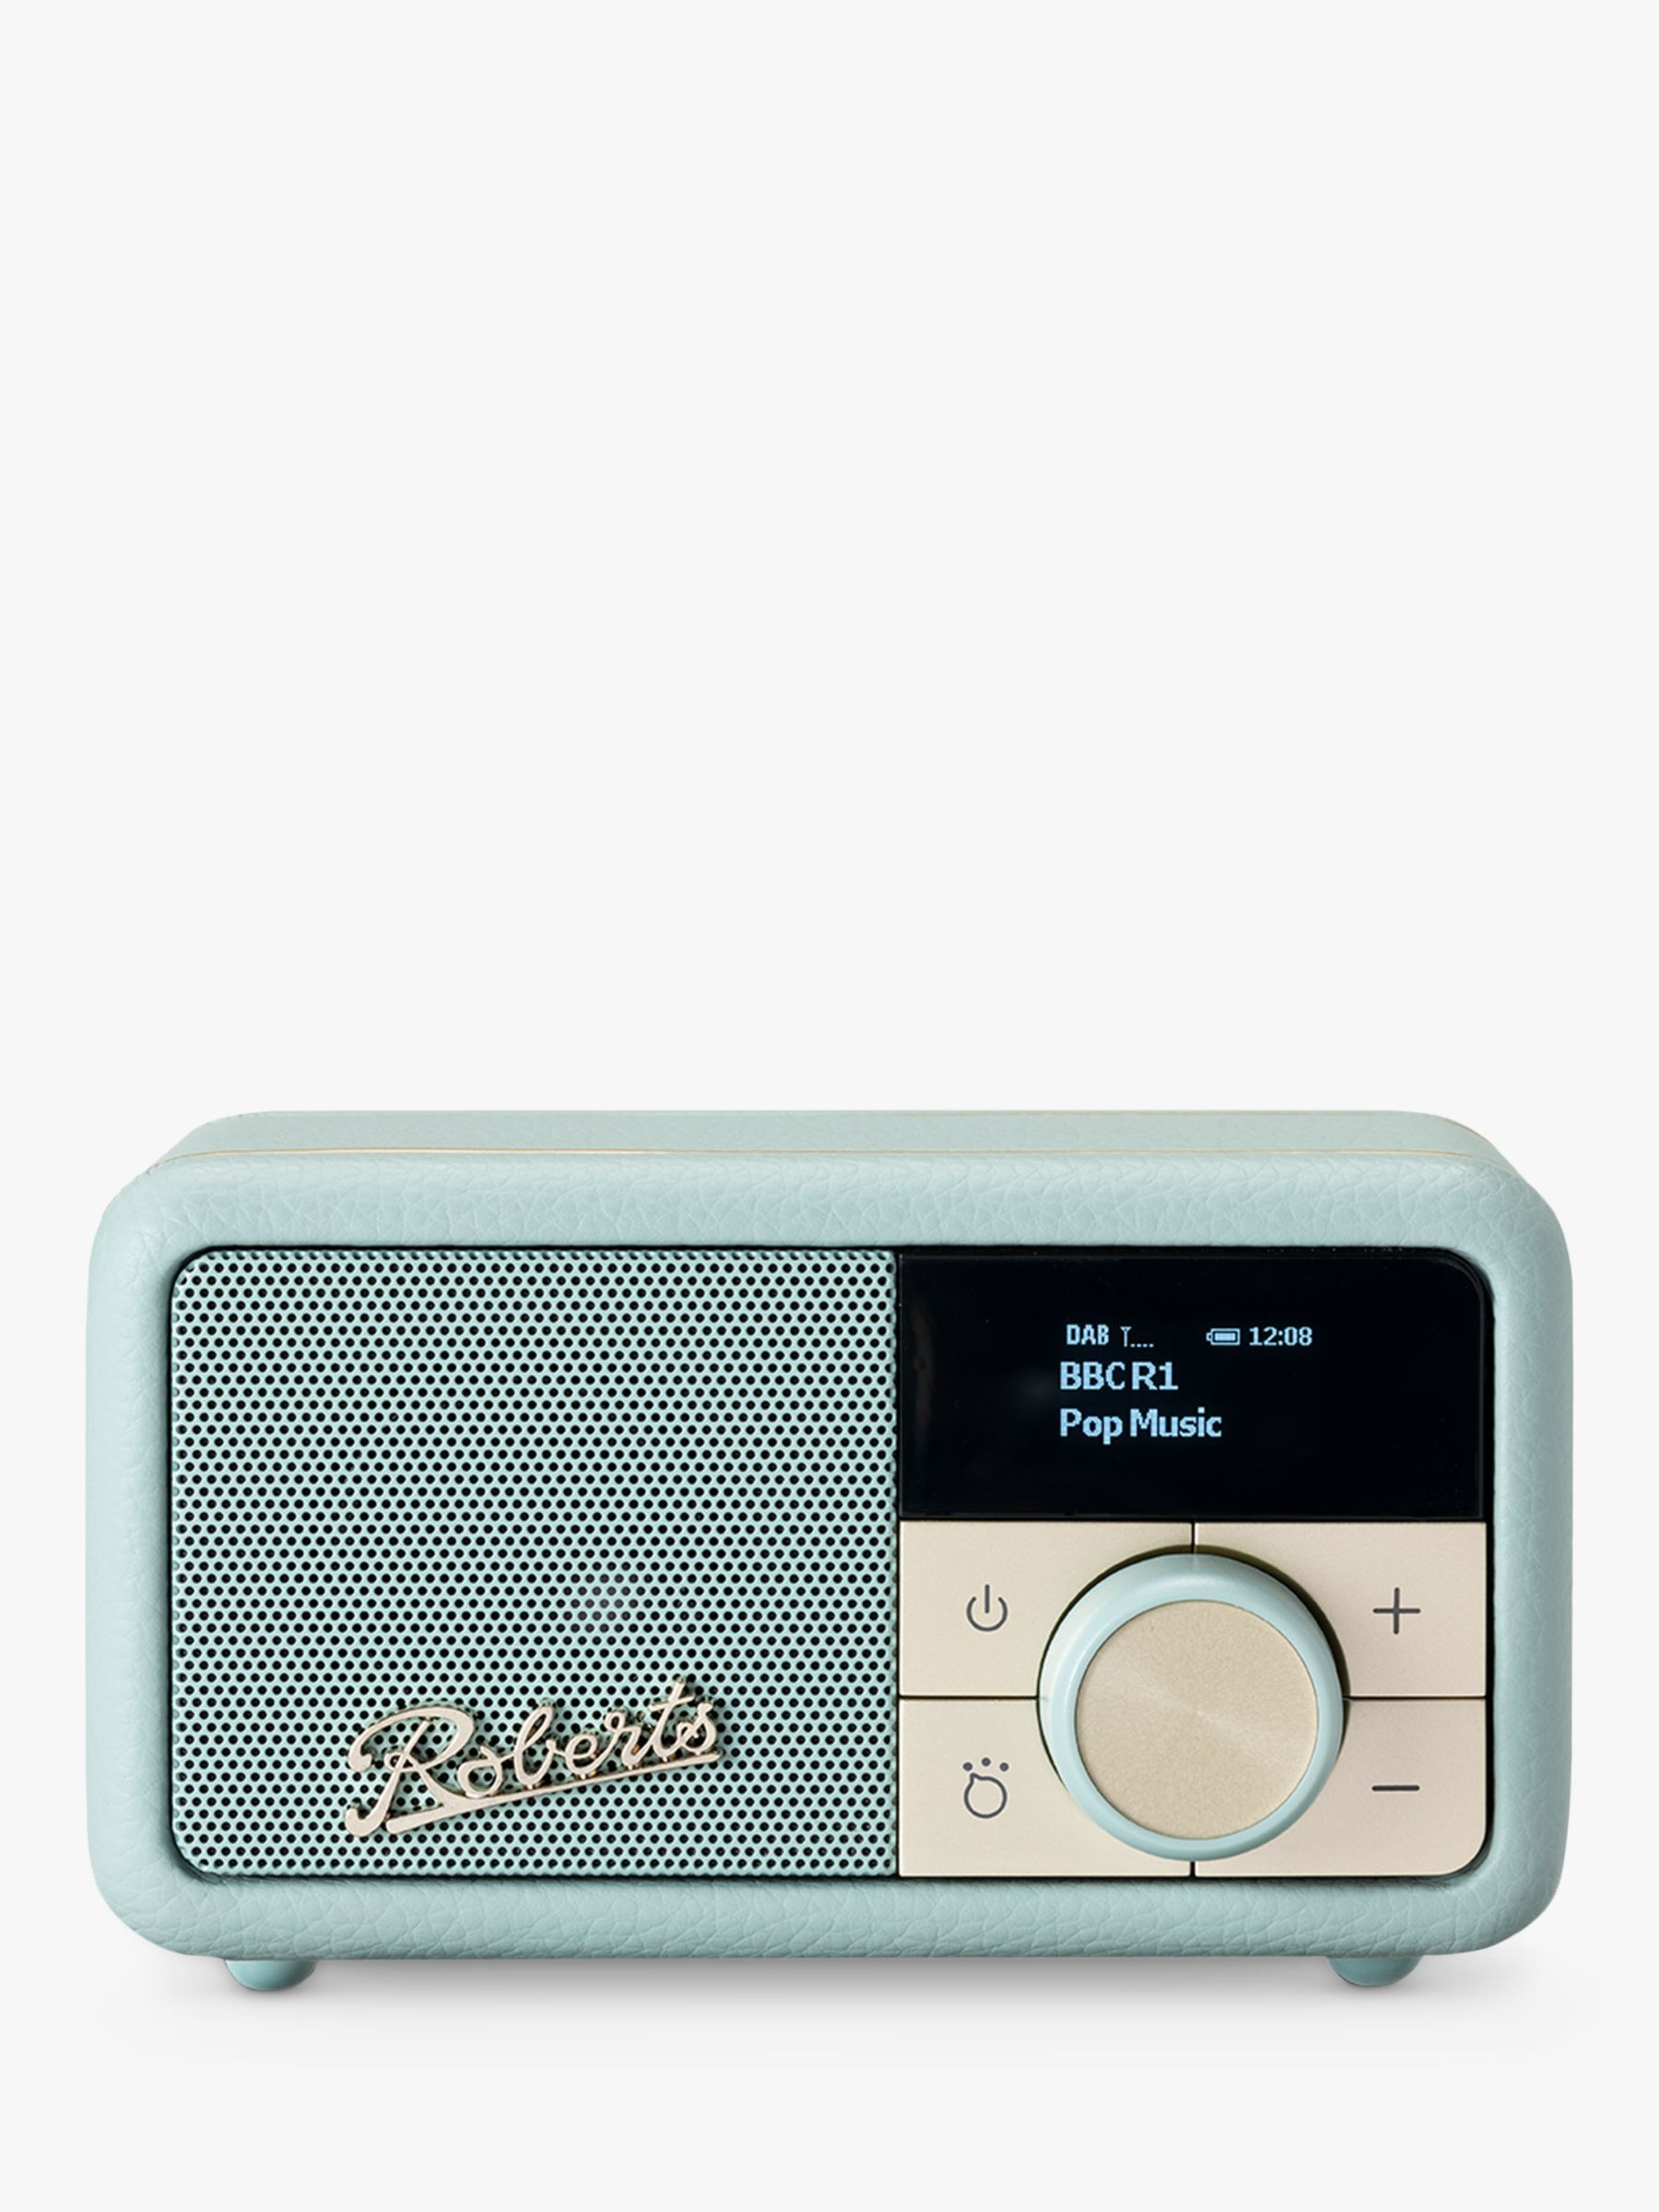 Roberts Revival Petite DAB/DAB+/FM Bluetooth Portable Digital Radio, Duck Egg Blue